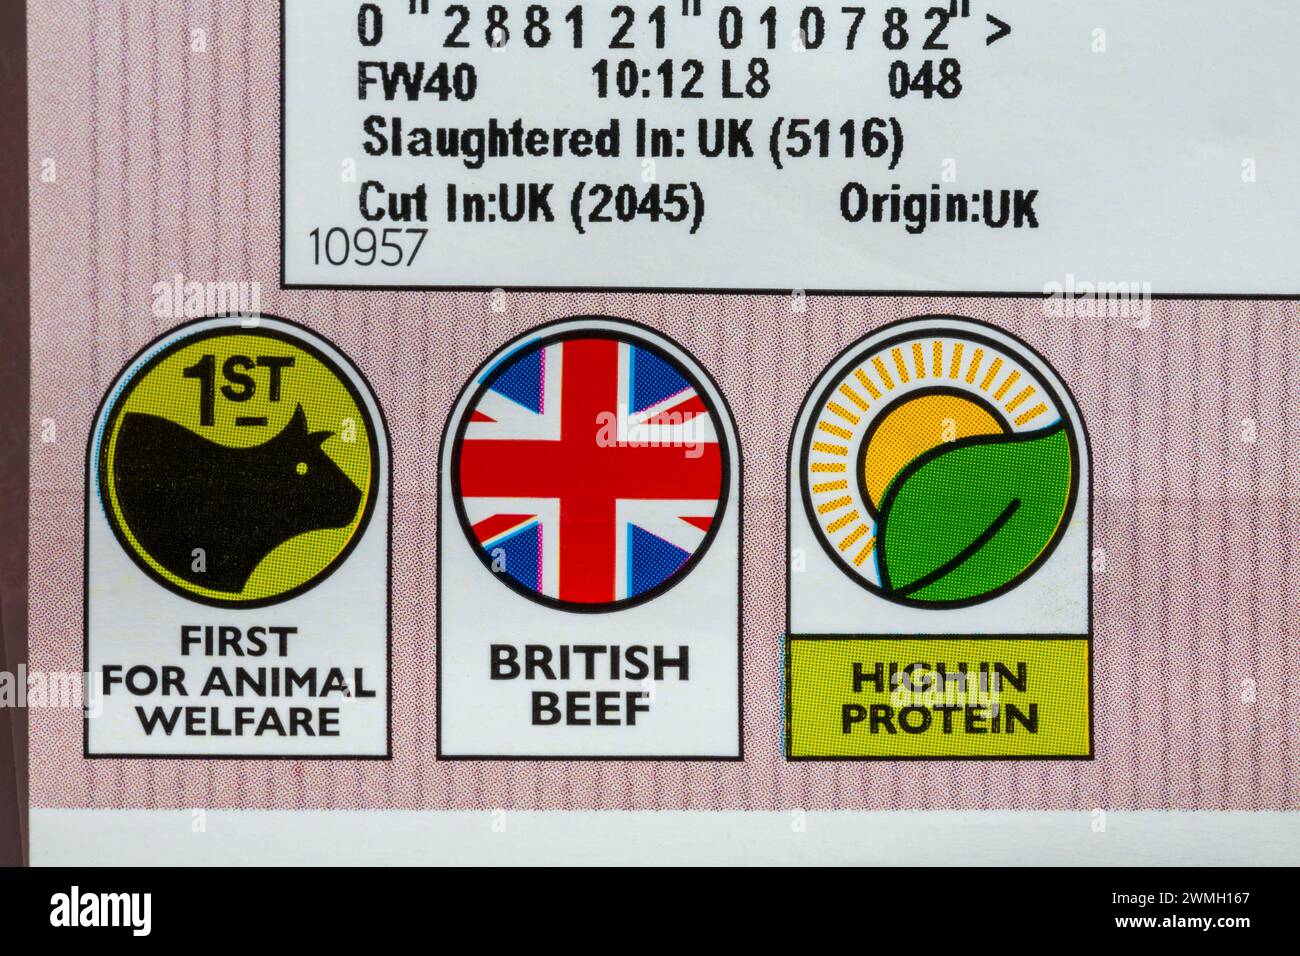 Premier pour le bien-être animal, le bœuf britannique, les symboles riches en protéines sur le paquet de filet de bœuf britannique Steak de races locales de Waitrose Banque D'Images